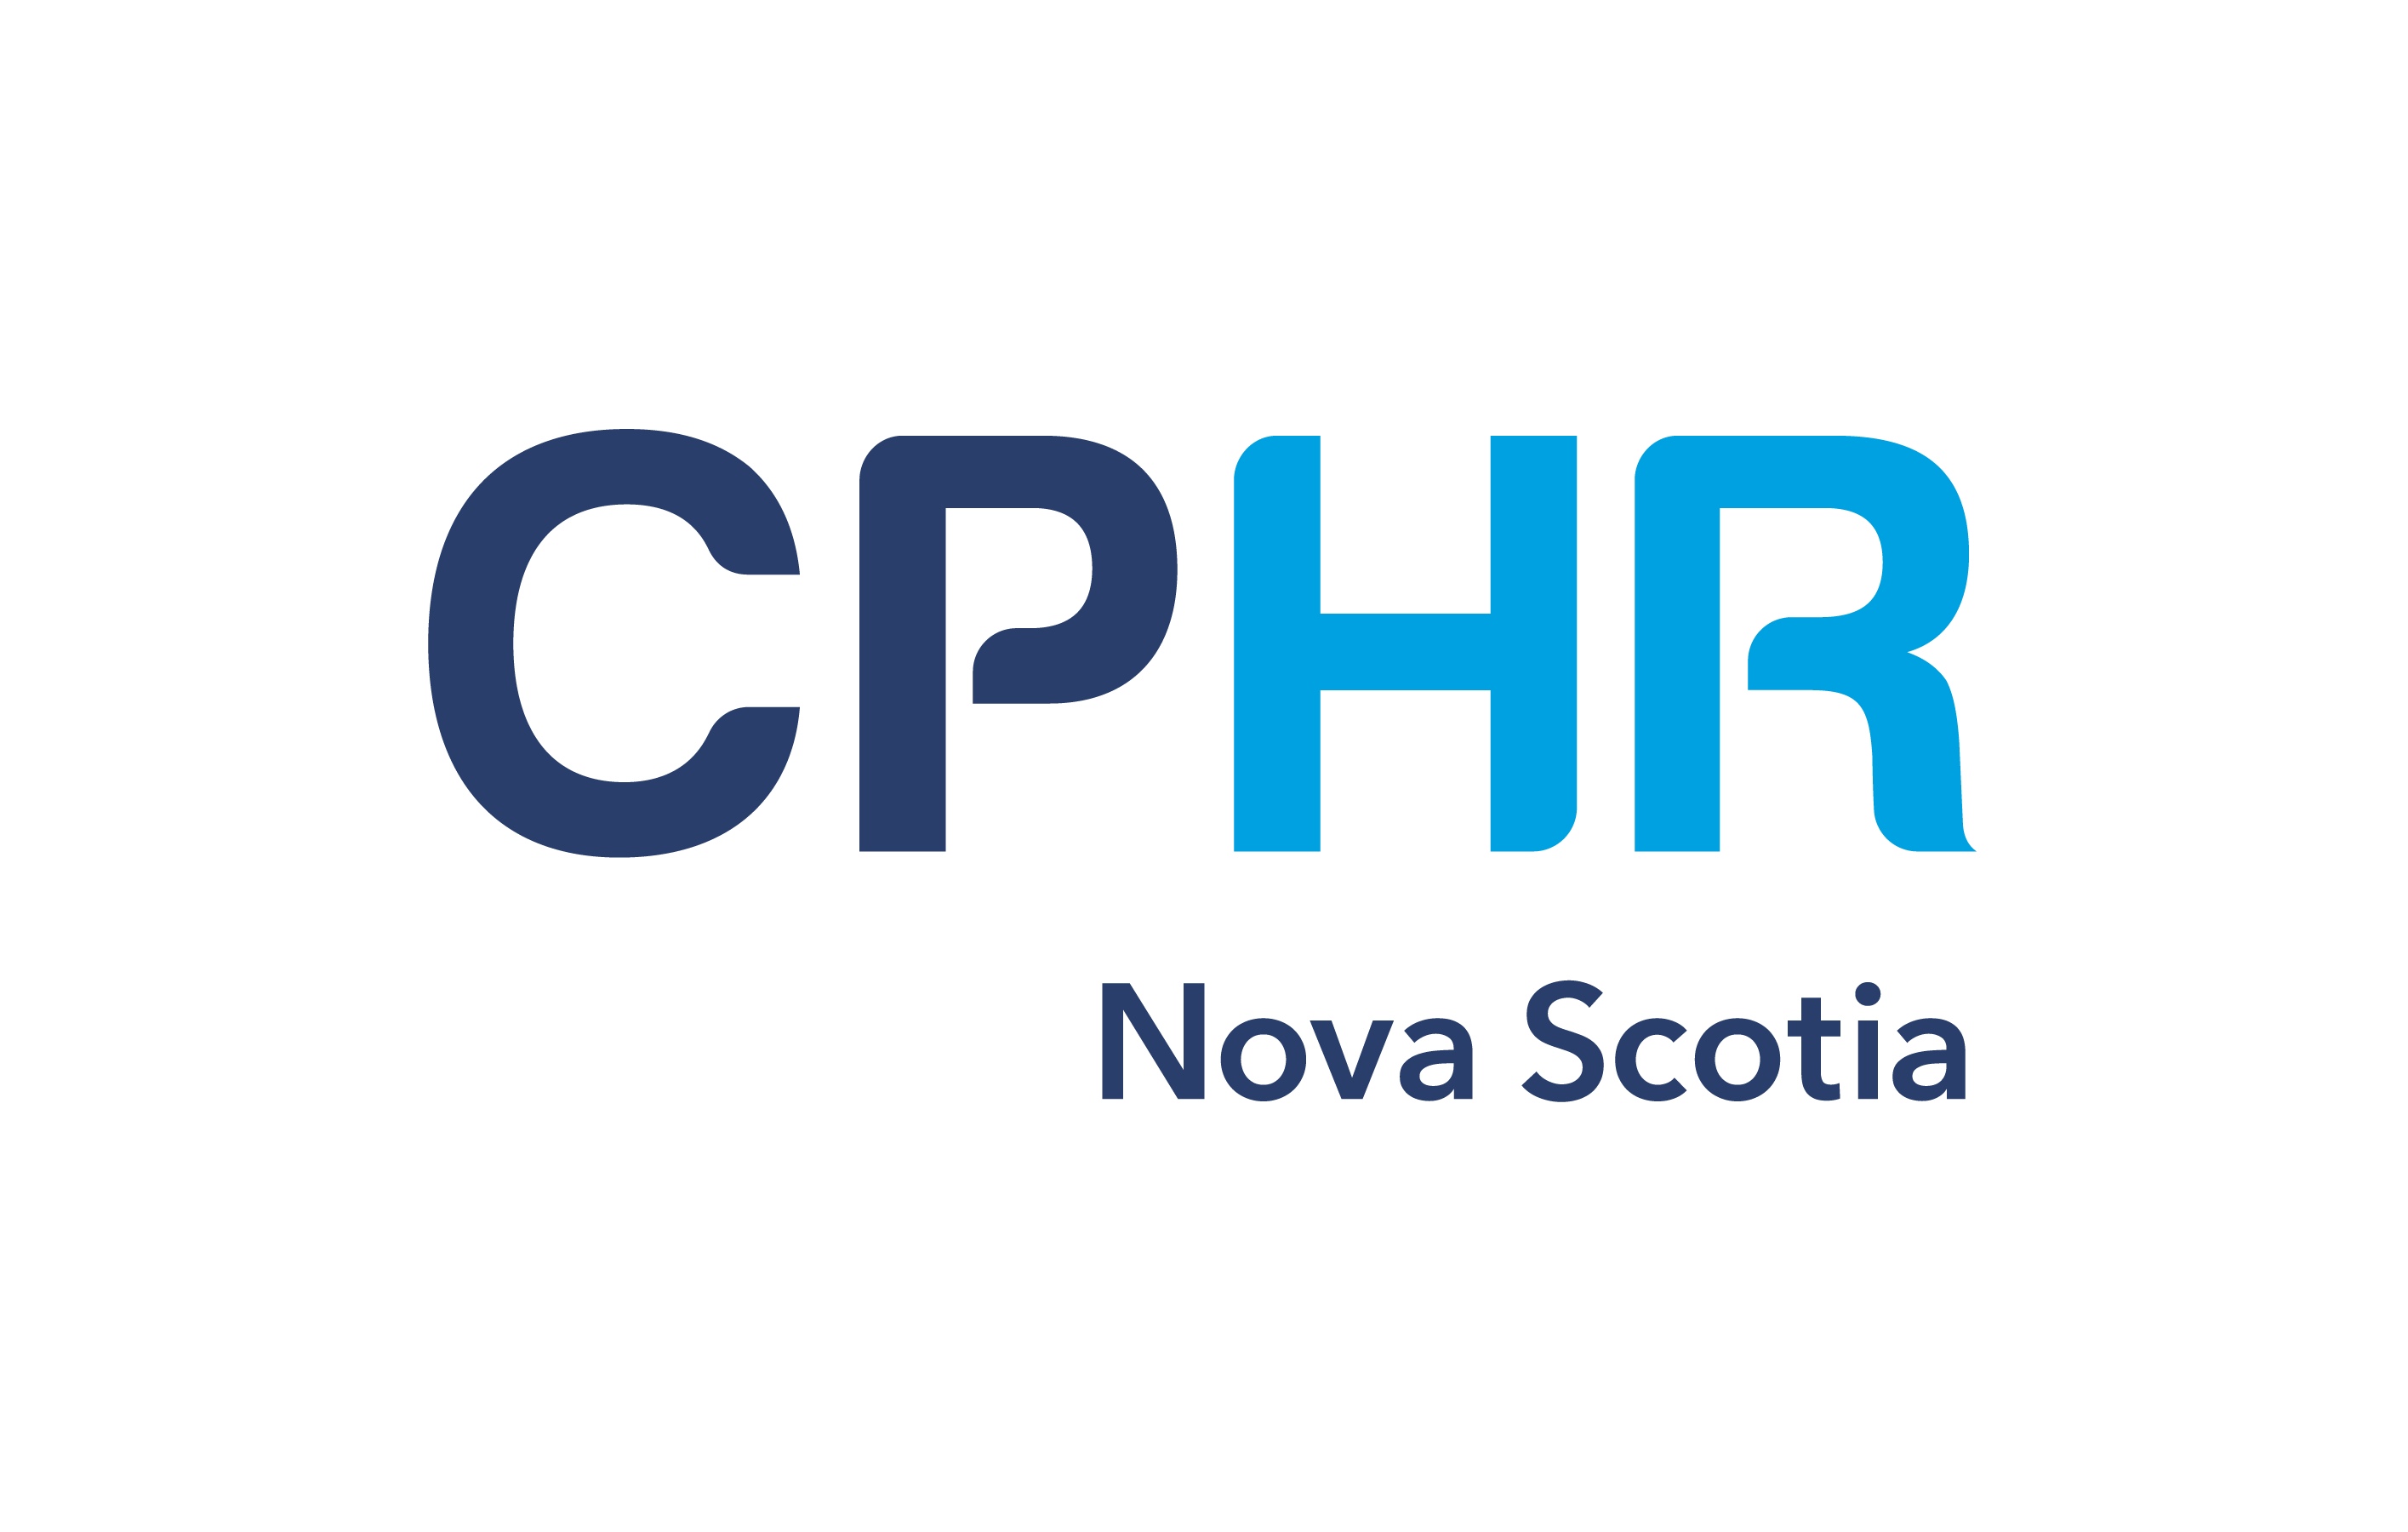 Cphr logo ns